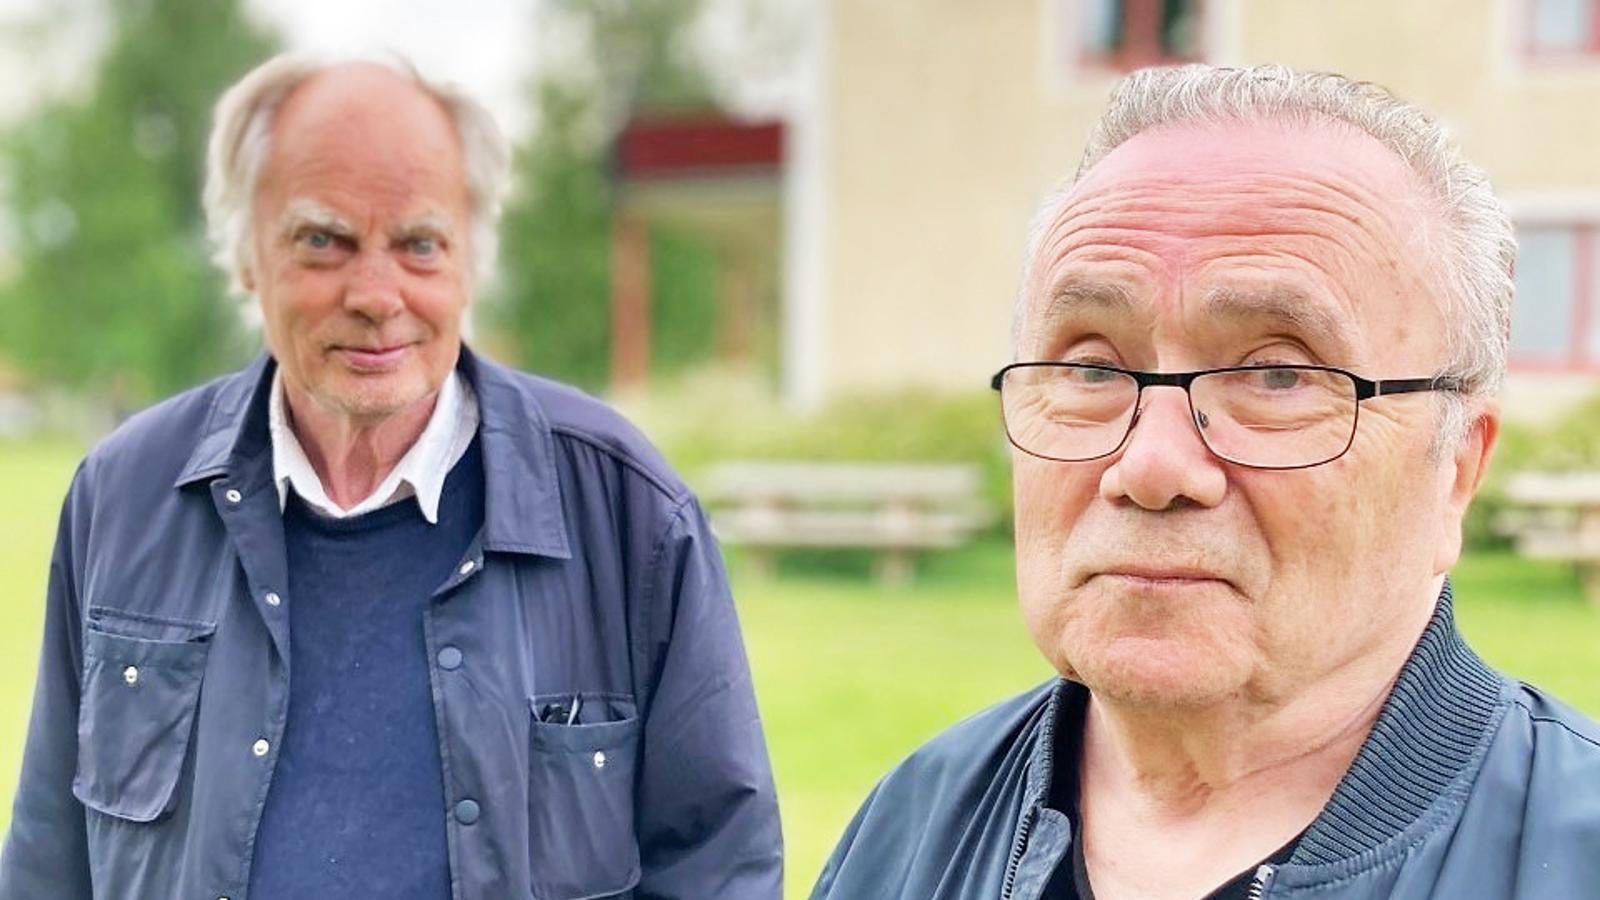 Två äldre män, Ralf och Janne, som står bredvid varandra och tittar in i kameran. De står utomhus och i bakgrunden syns ett hus och några träd.